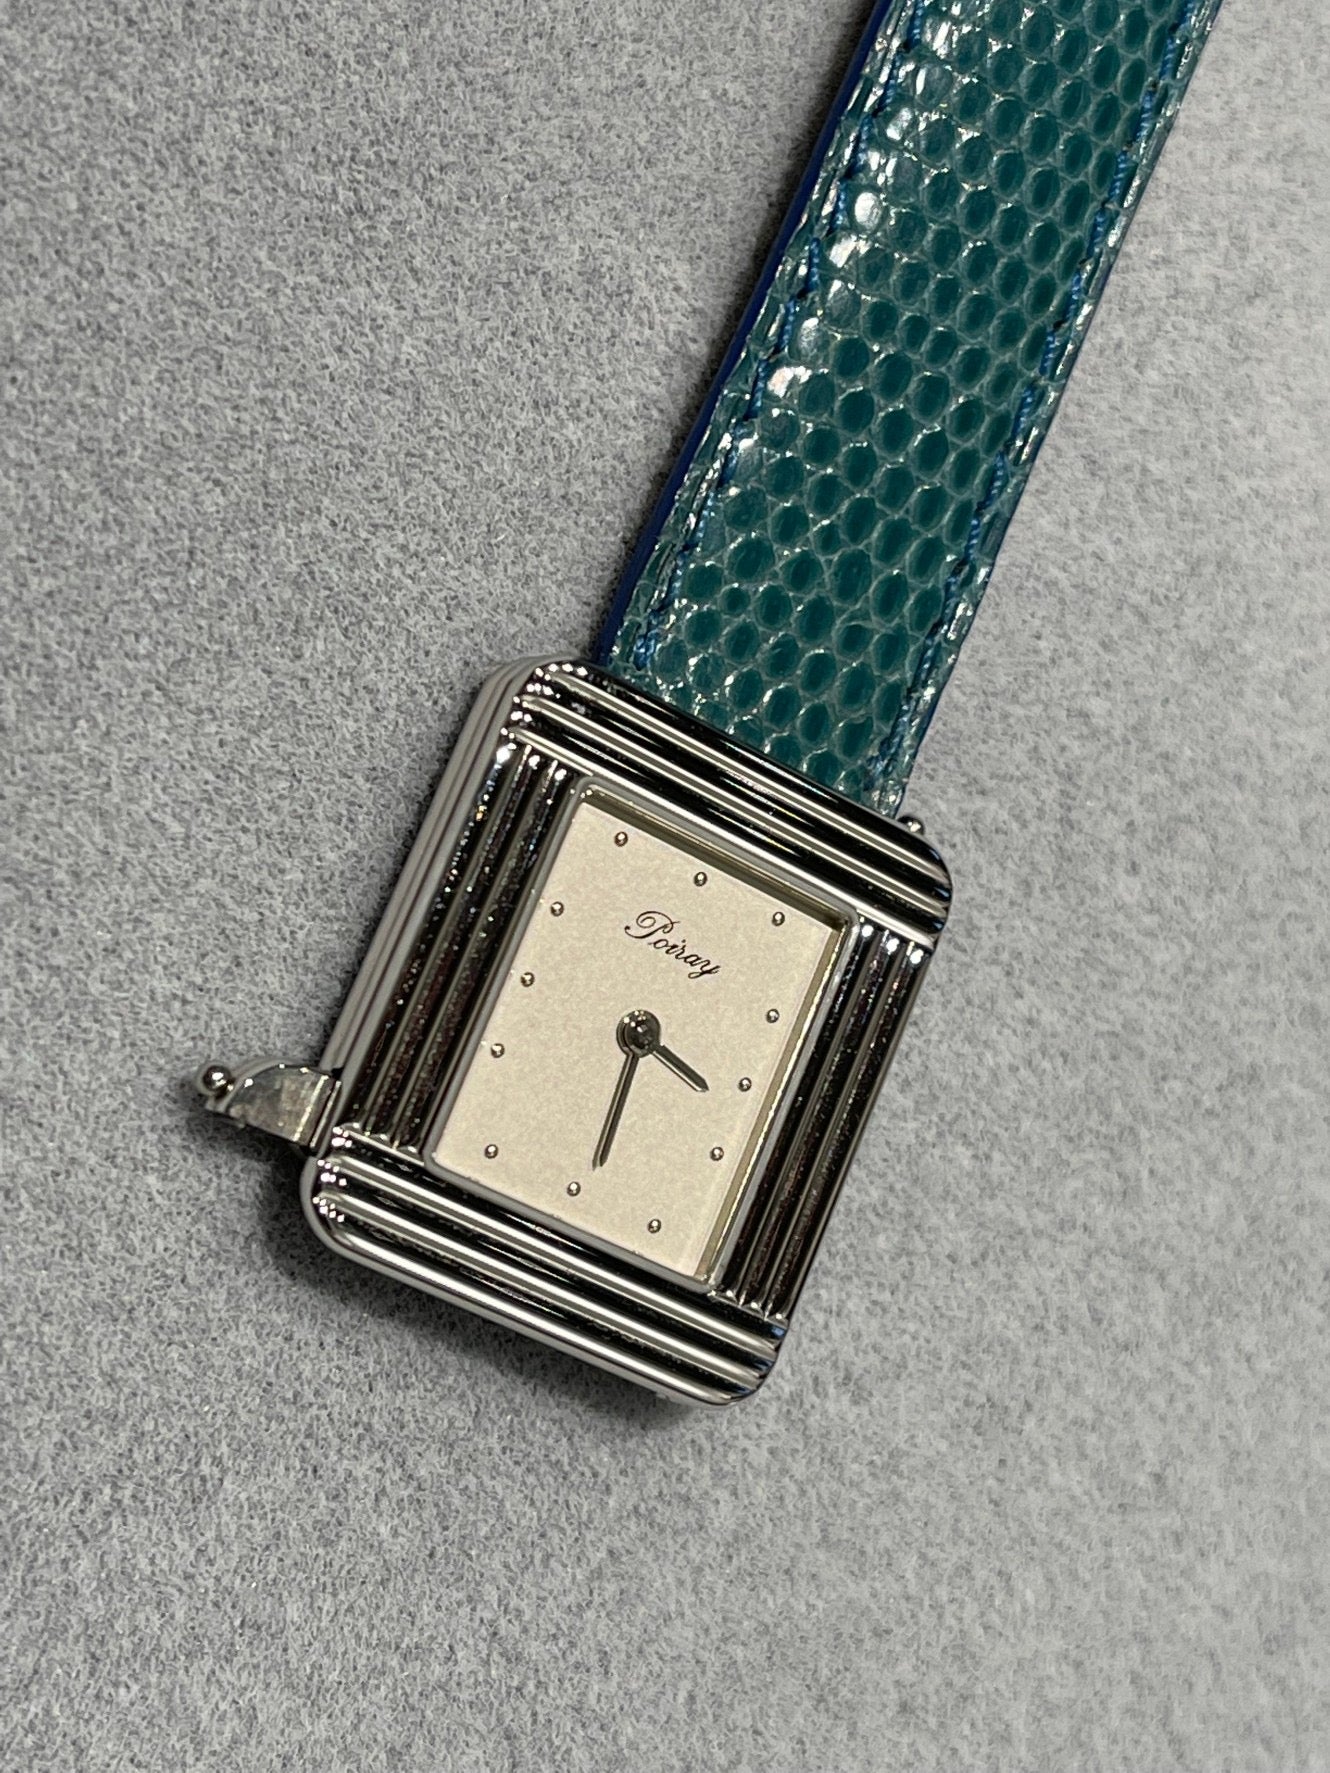 Poiray ポアレ マ プルミエ 時計 パール ダイヤモンド - レディース腕時計